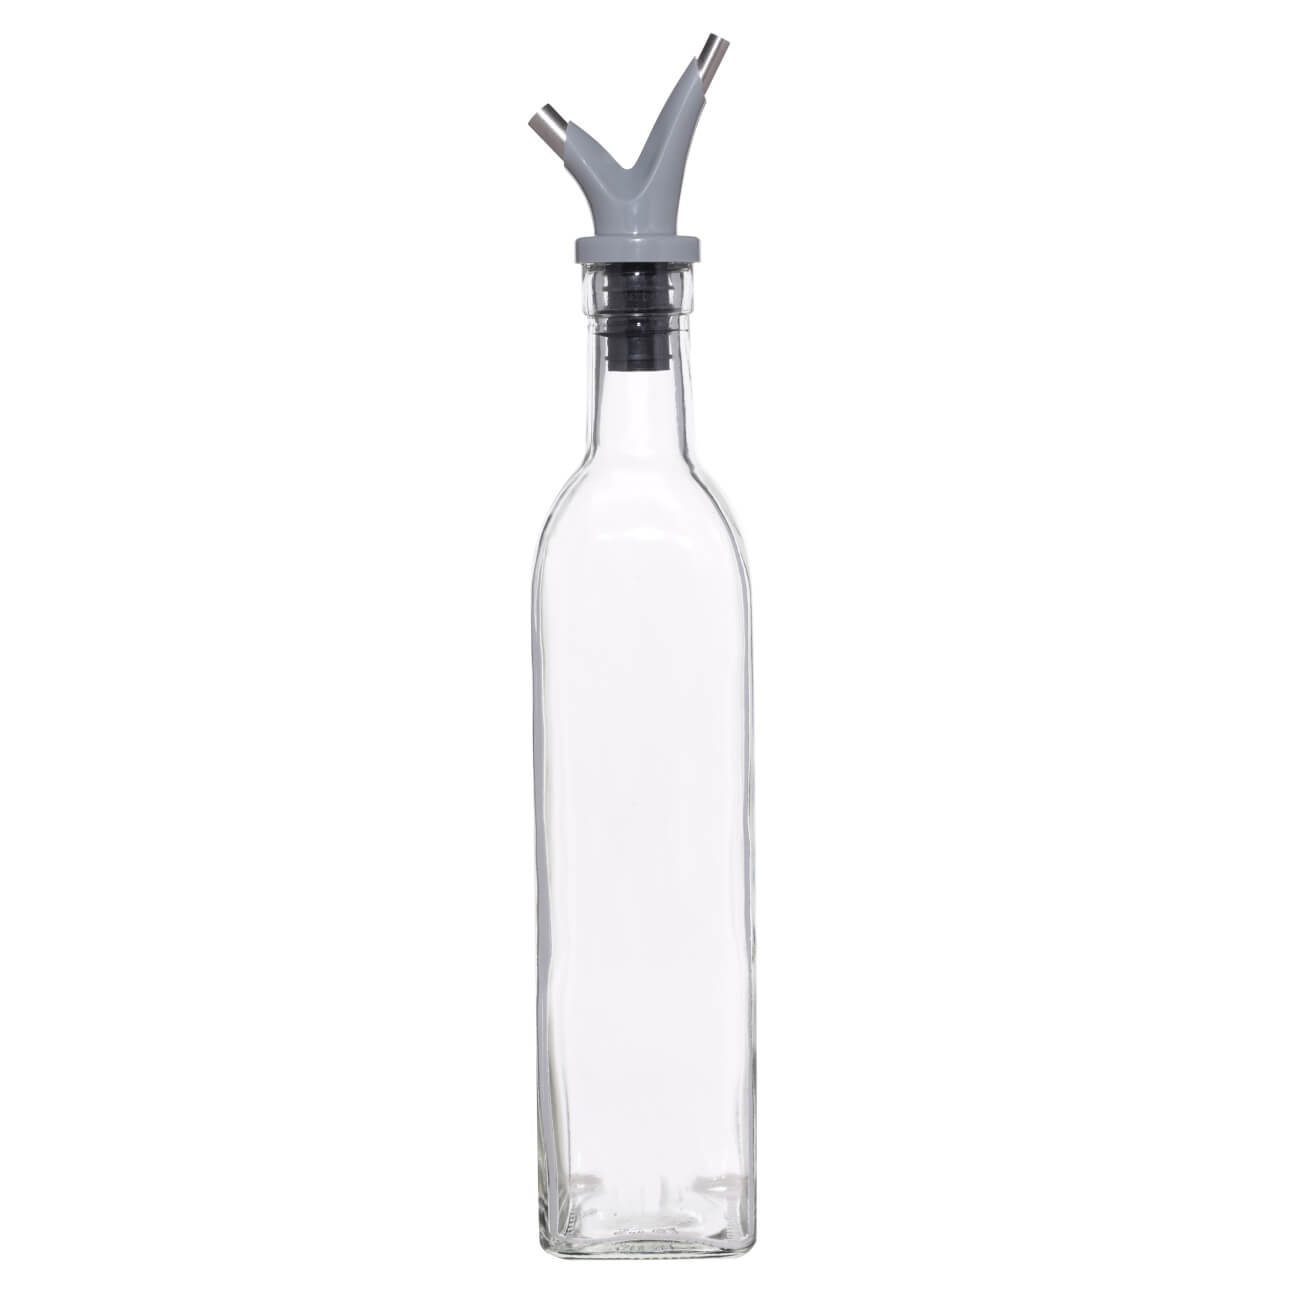 Бутылка для масла или уксуса, 500 мл, с двойным дозатором, стекло/пластик, Assist бутылка для масла уксуса mallony 280мл стеклянная с дозатором 103805